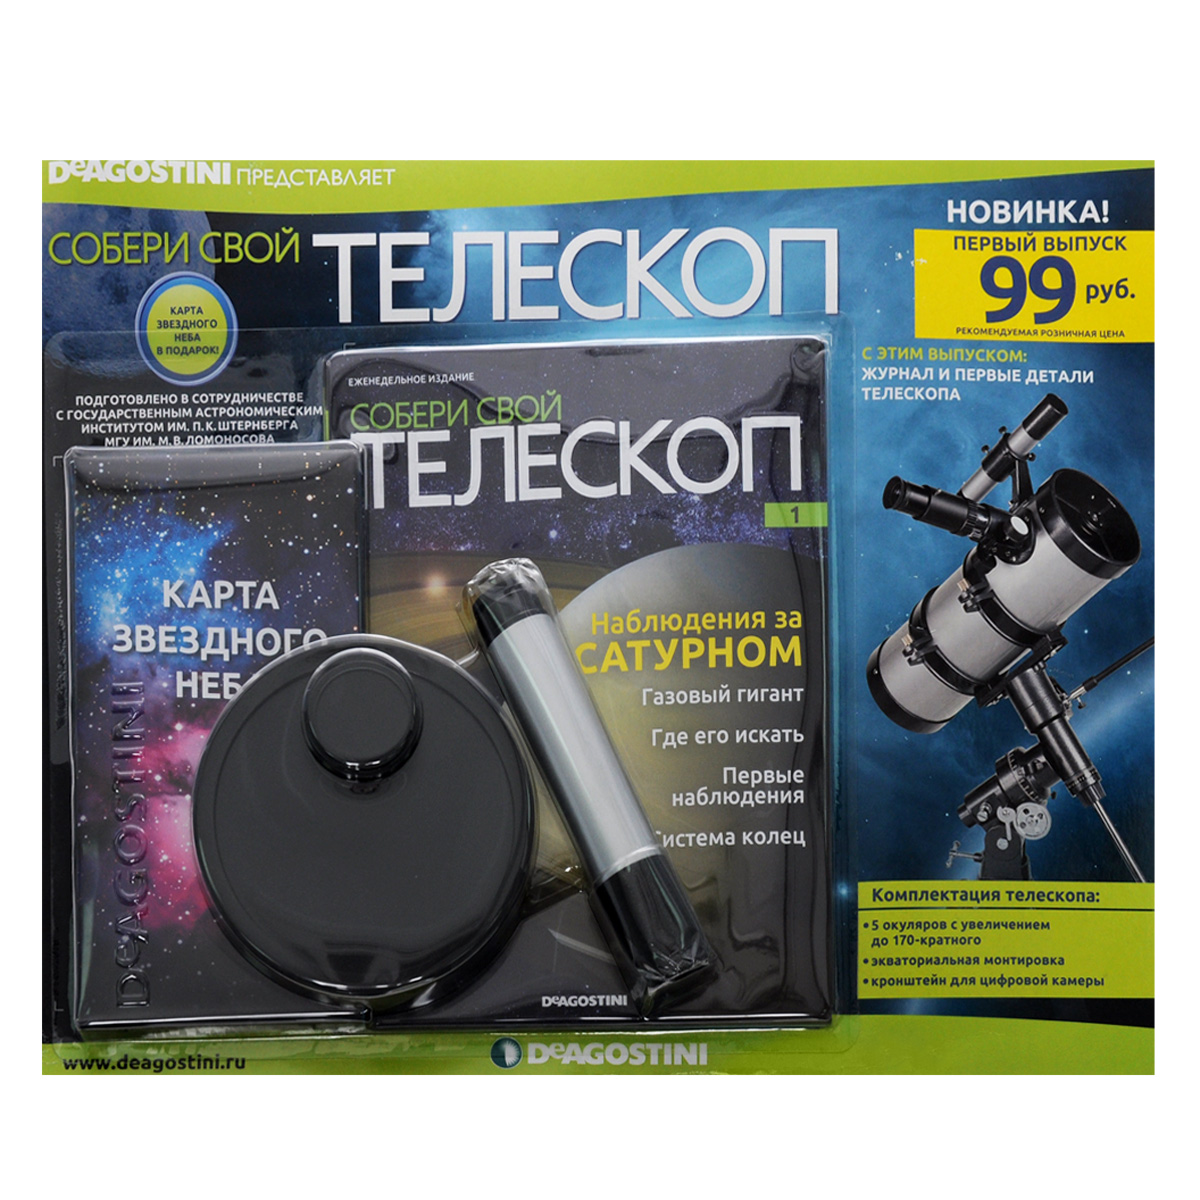 Журнал "Собери свой телескоп" № 001